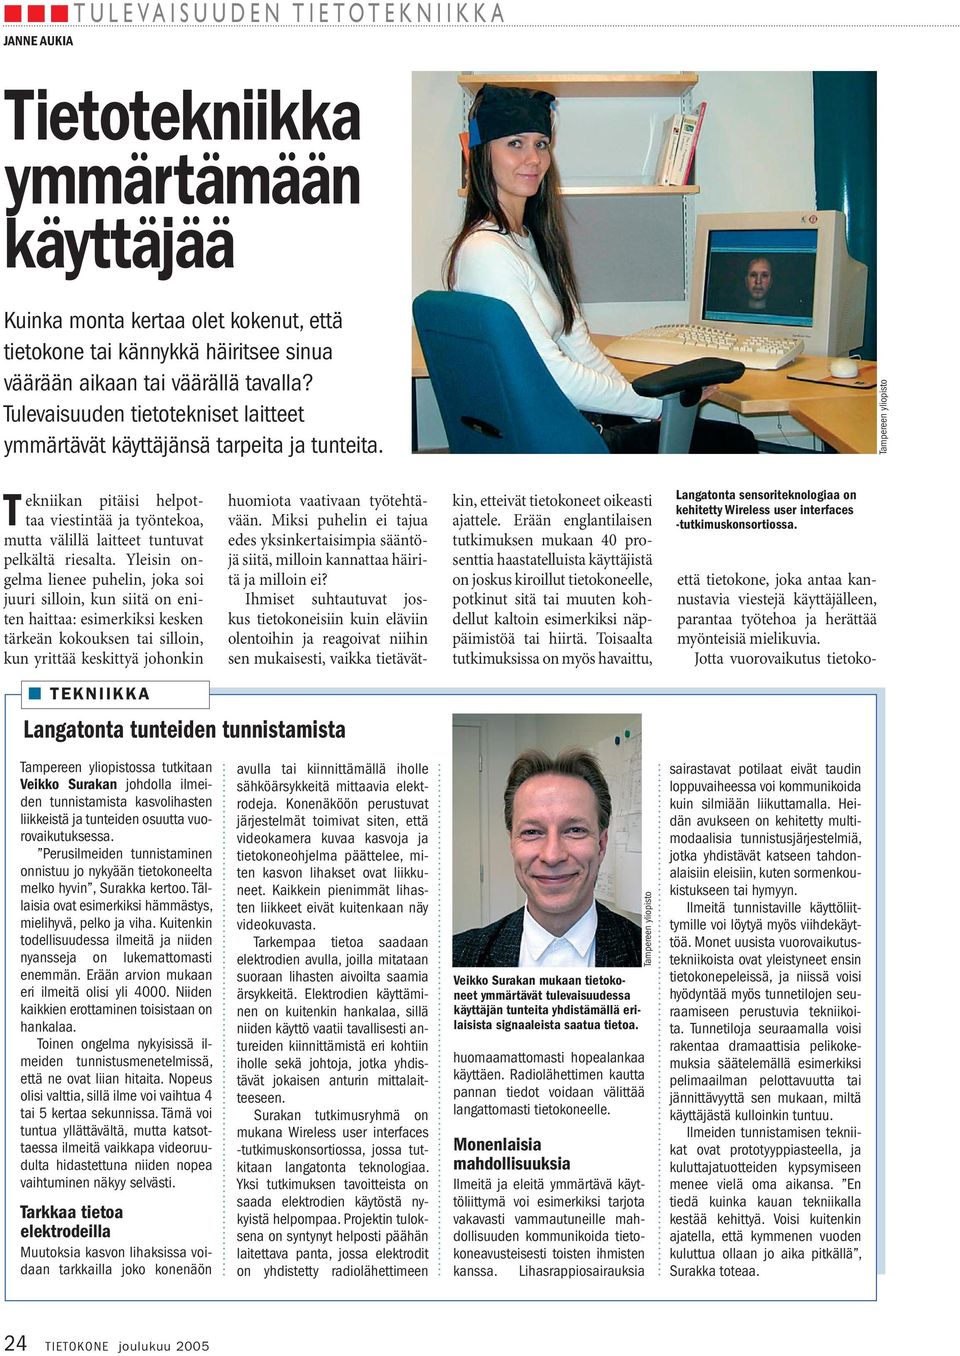 Tampereen yliopisto Tekniikan pitäisi helpottaa viestintää ja työntekoa, mutta välillä laitteet tuntuvat pelkältä riesalta.